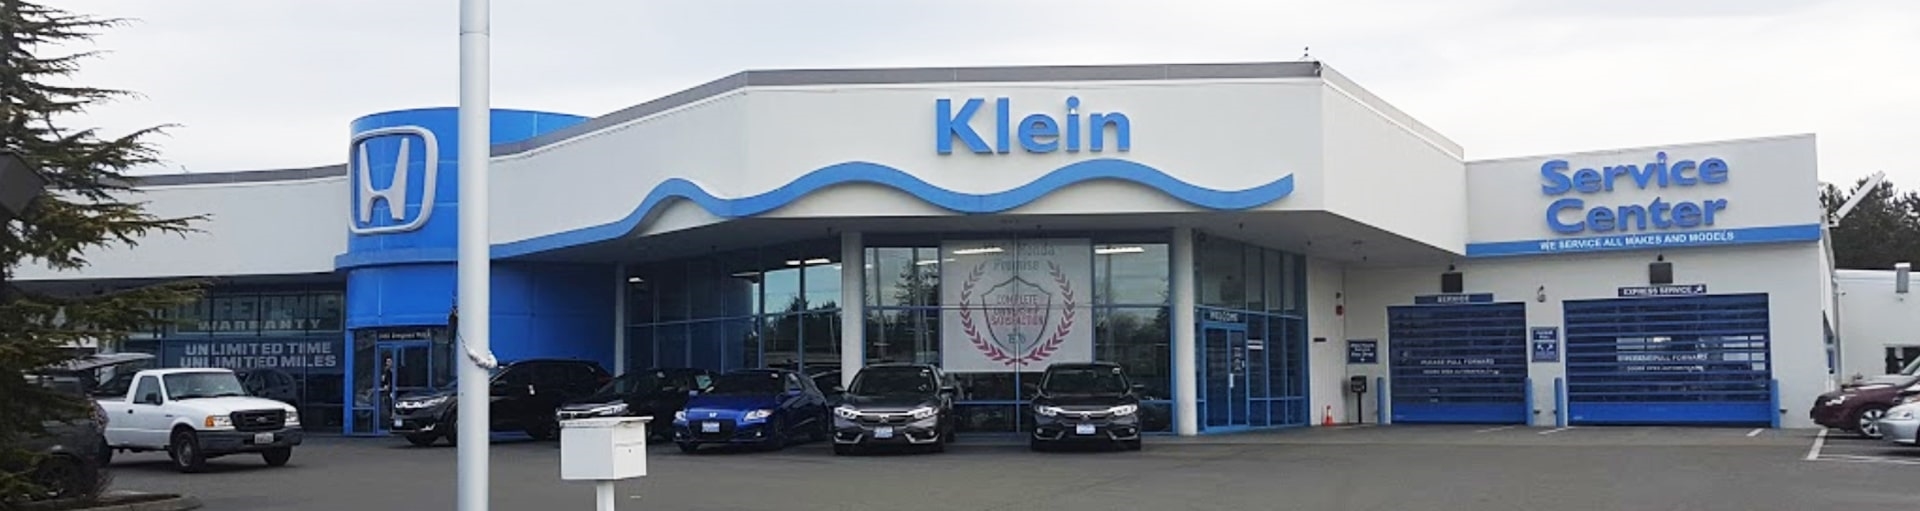 The Klein Honda Service Center is shown.